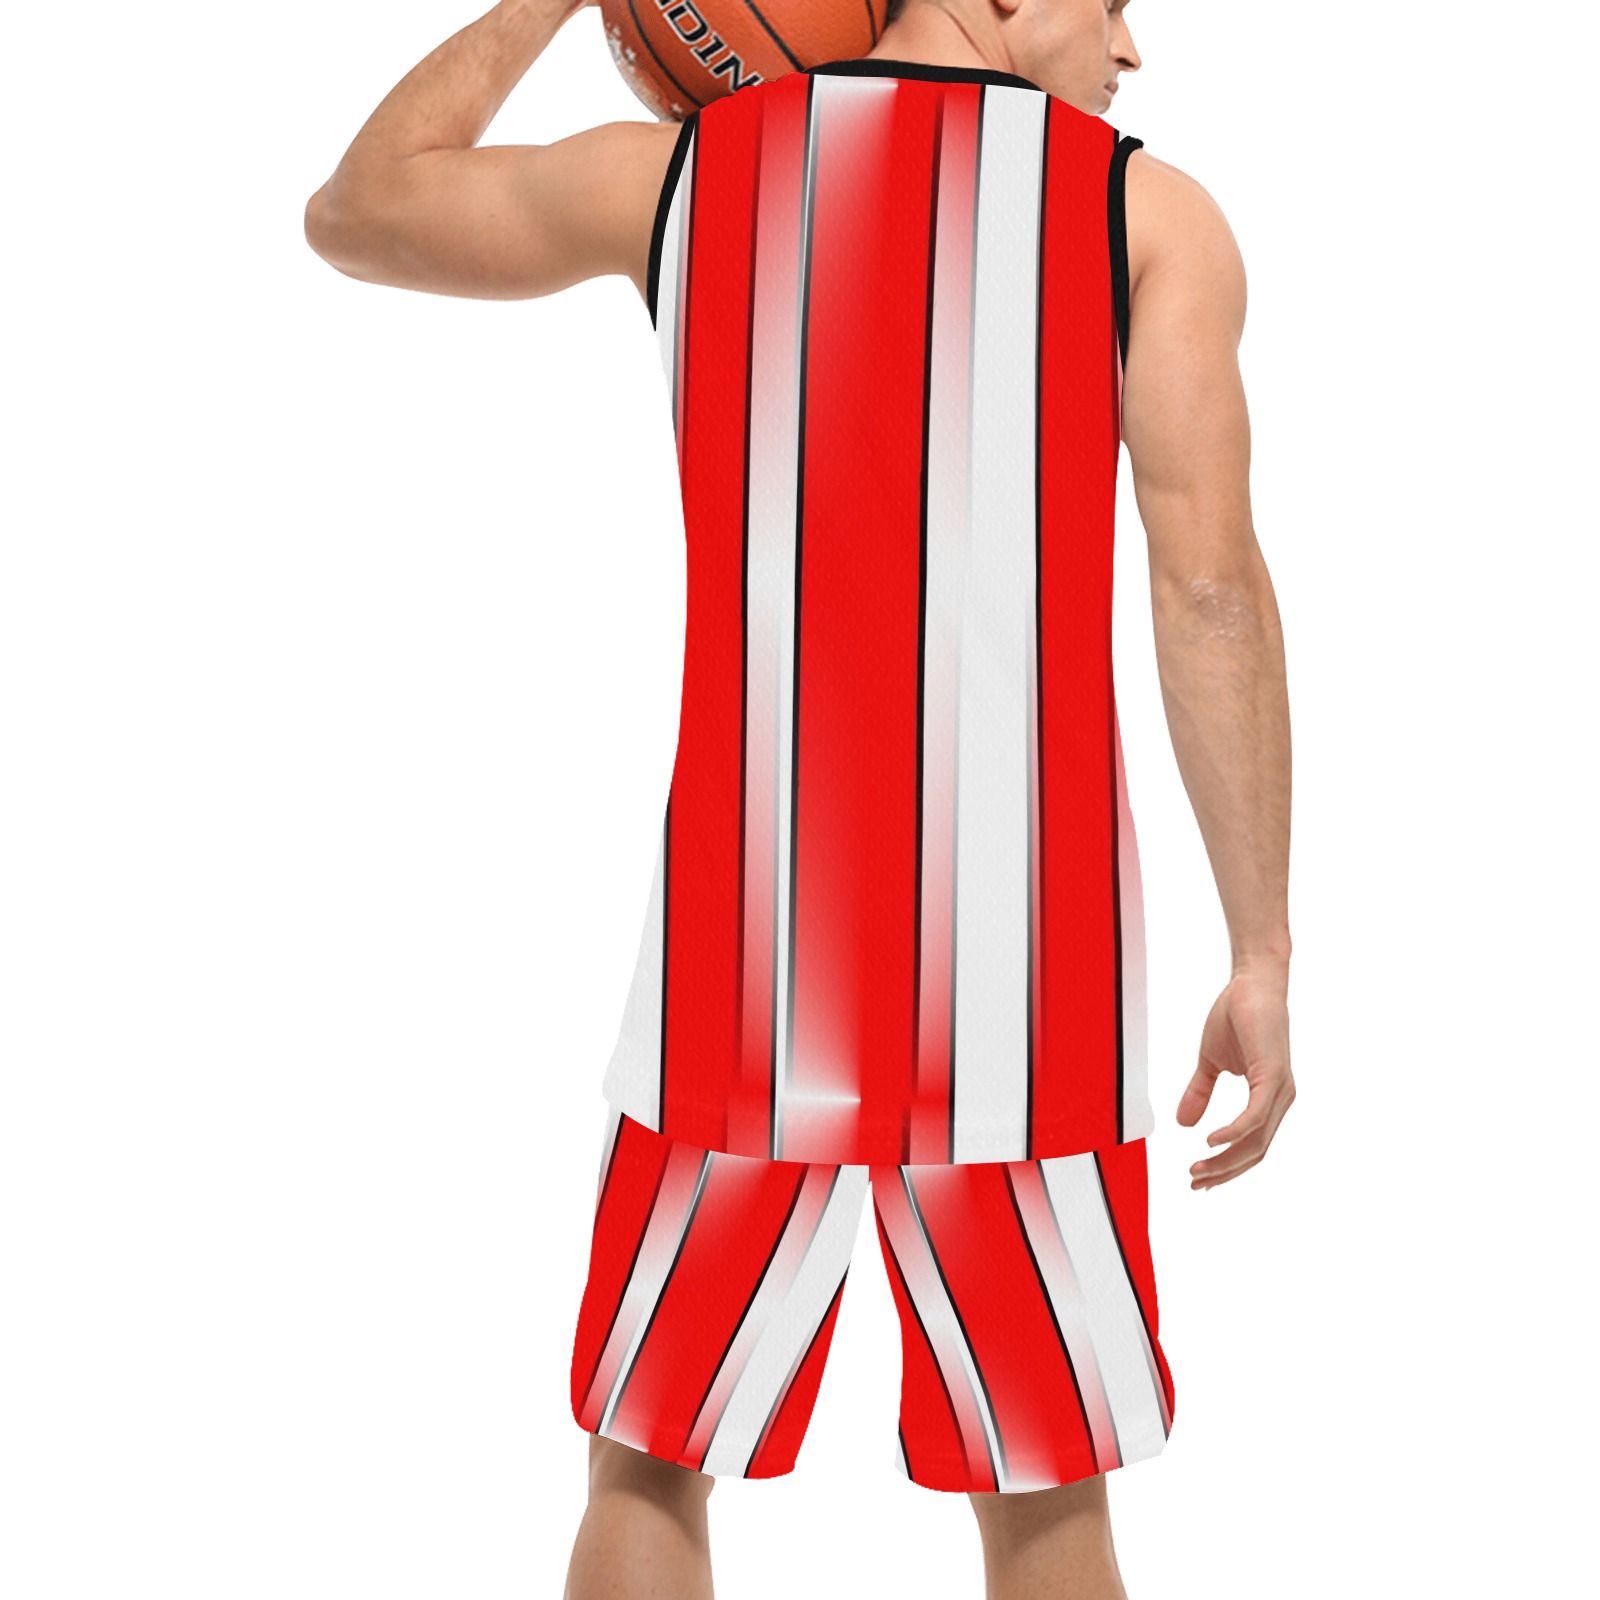 Köln by Nico Bielow Basketball Uniform with Pocket